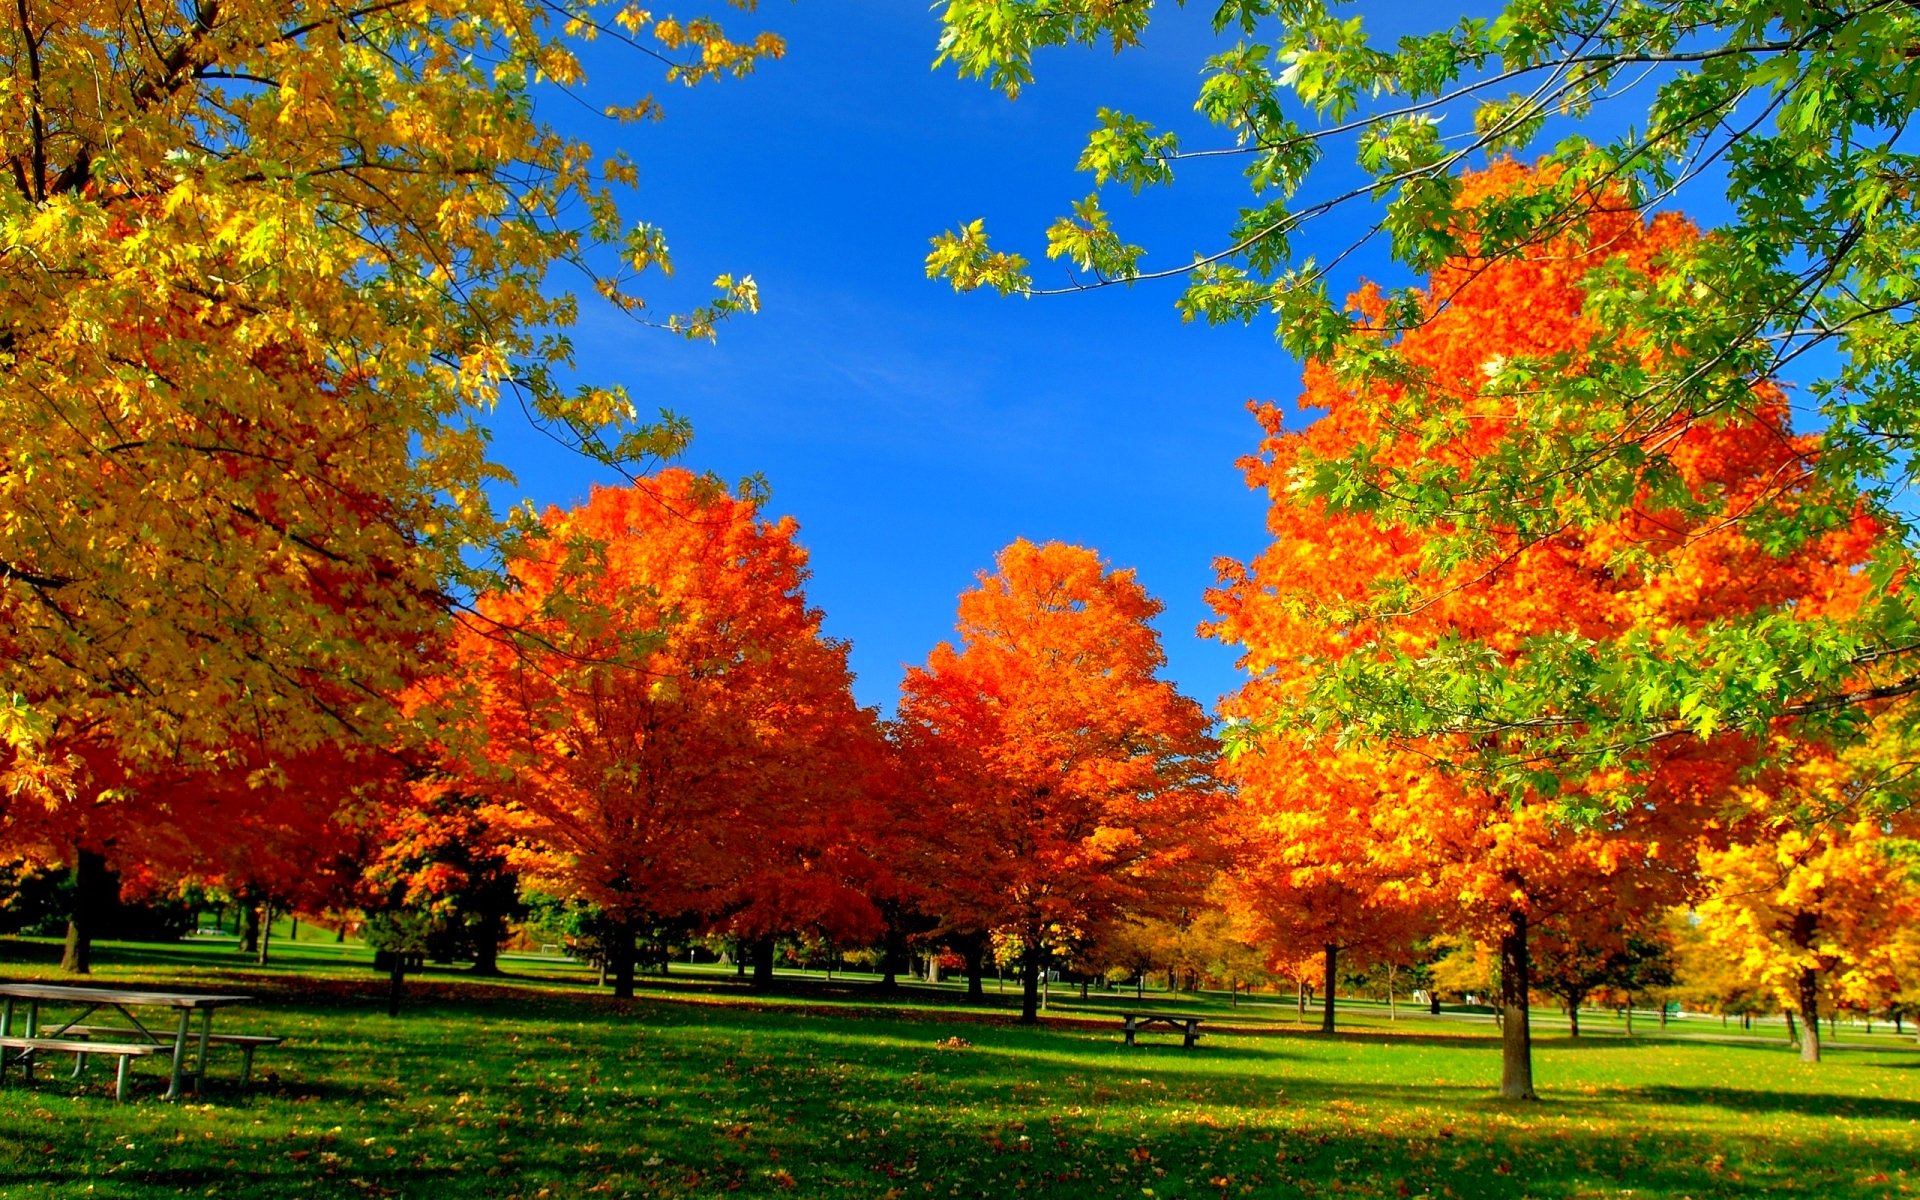 Скачать картинку Осень, Парк, Дерево, Фотографии в телефон бесплатно.